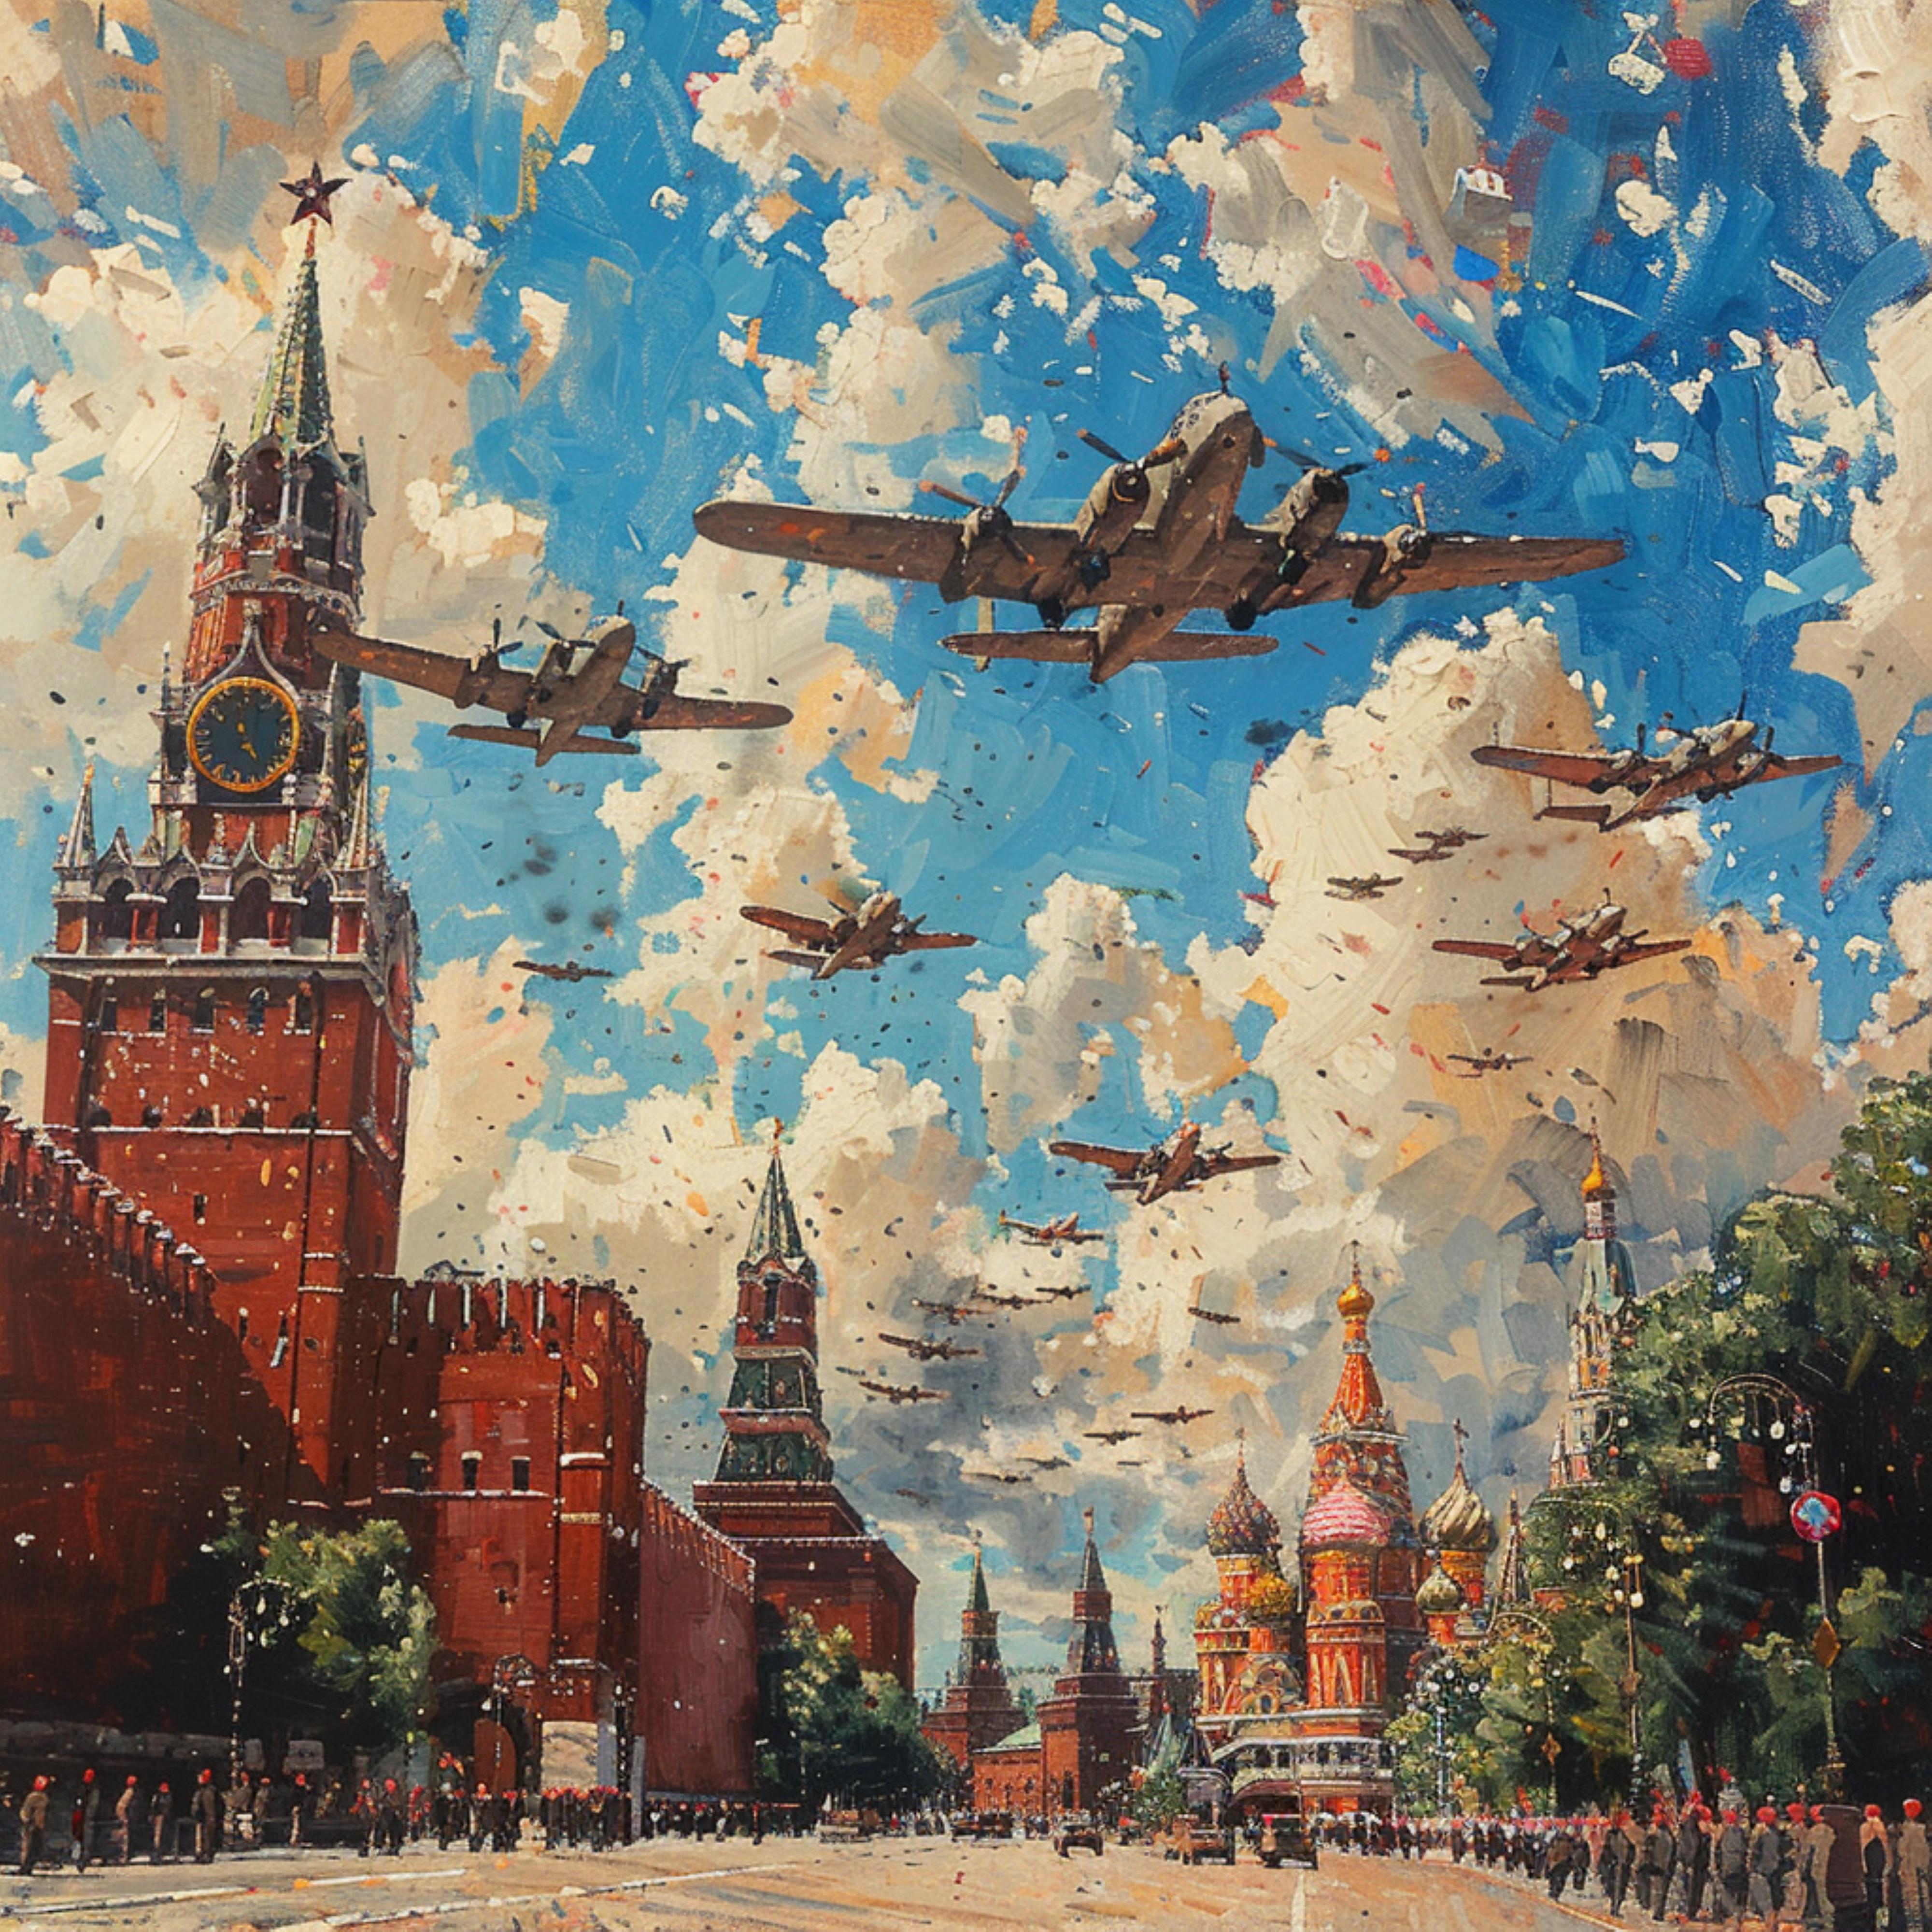 Постер альбома Песни Великой Победы